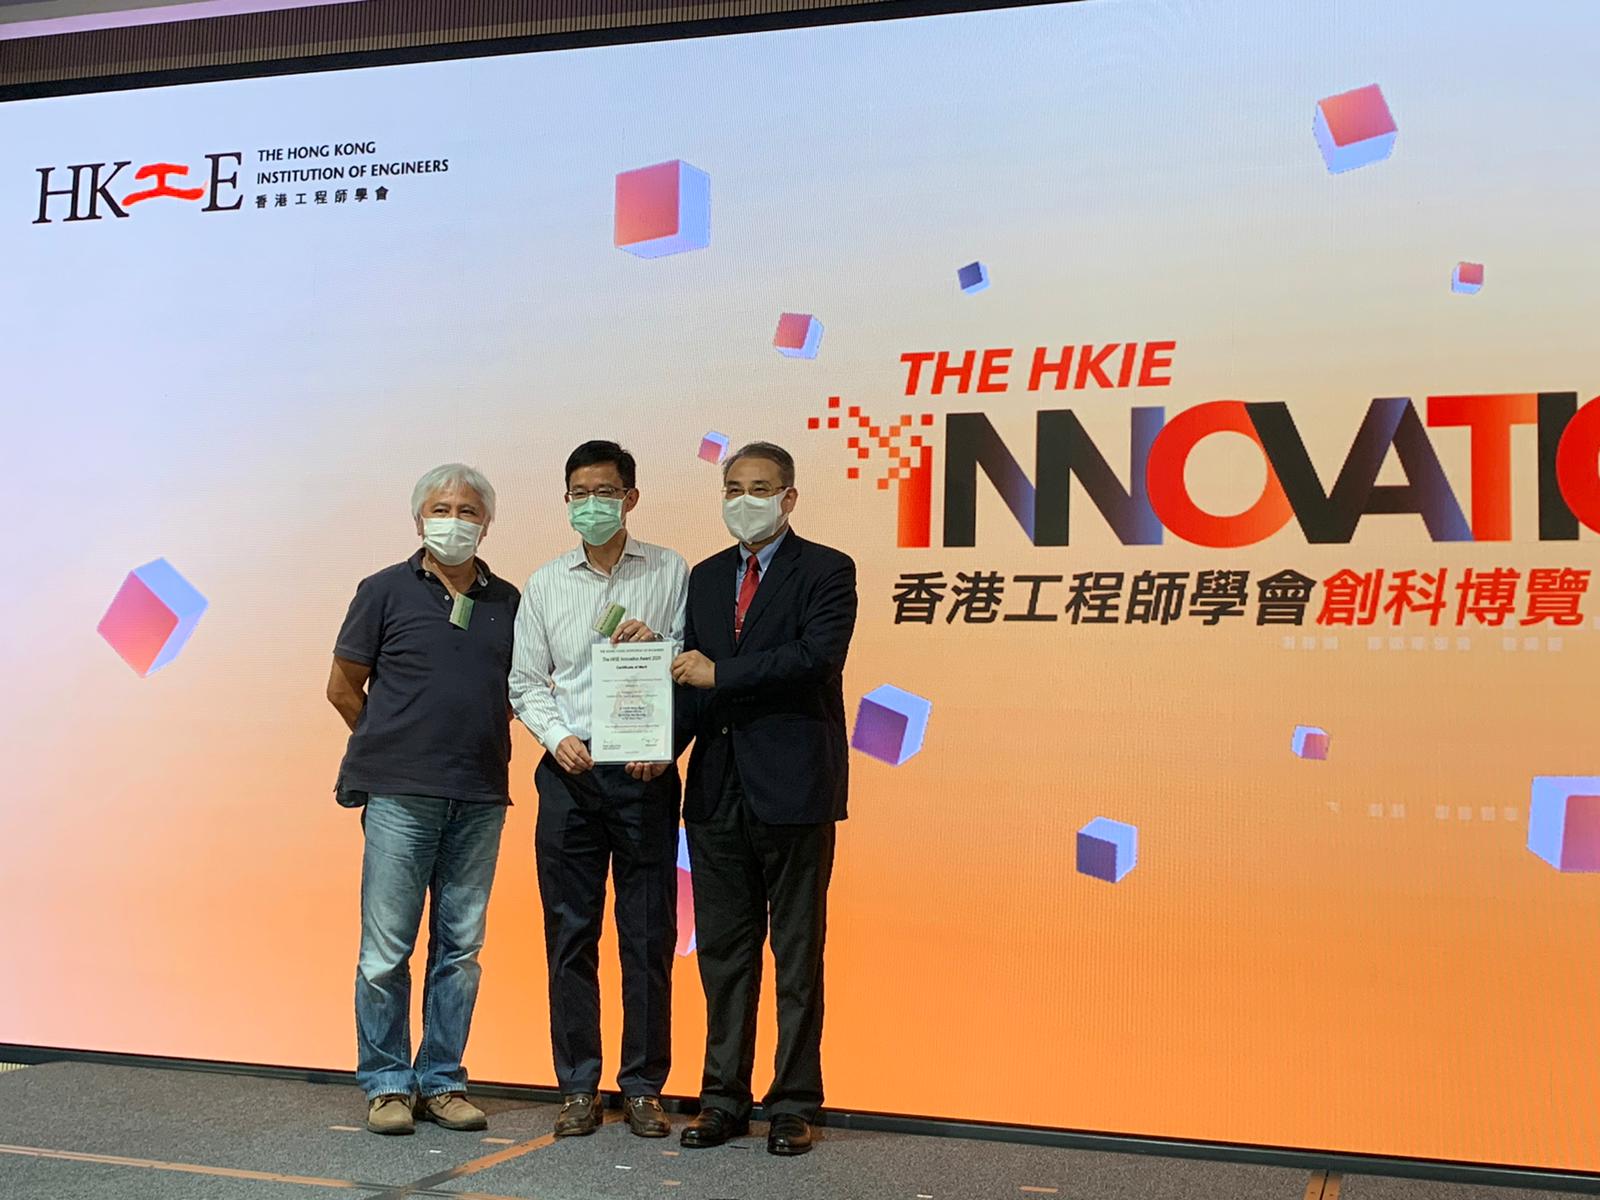 香港工程师学会创意奖2020 (组别II —创新应用)优异奖